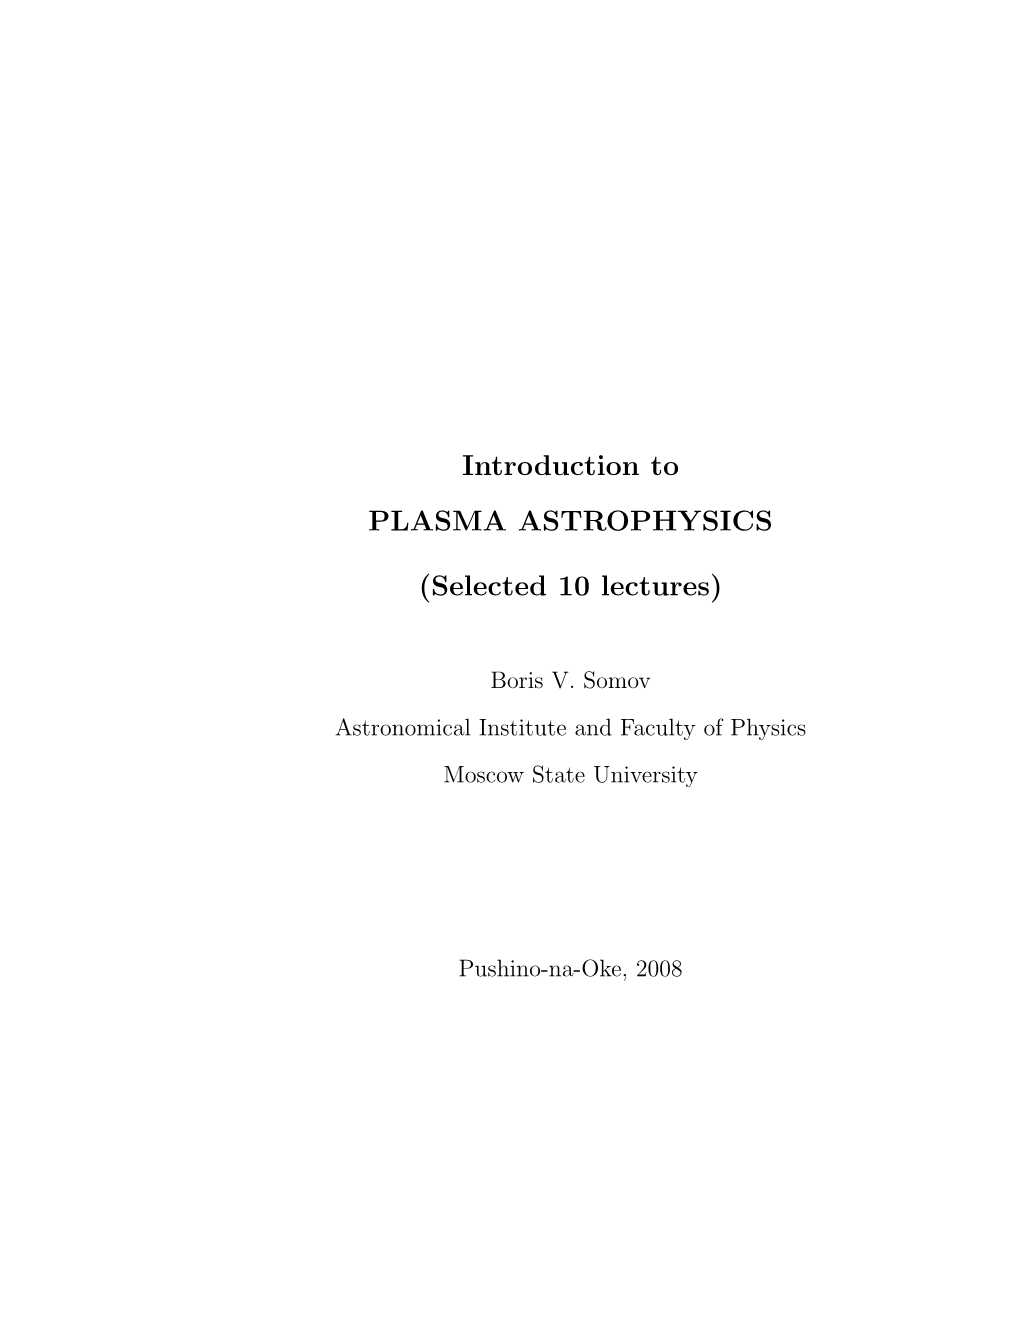 B.V. Somov. Introduction to Plasma Astrophysics